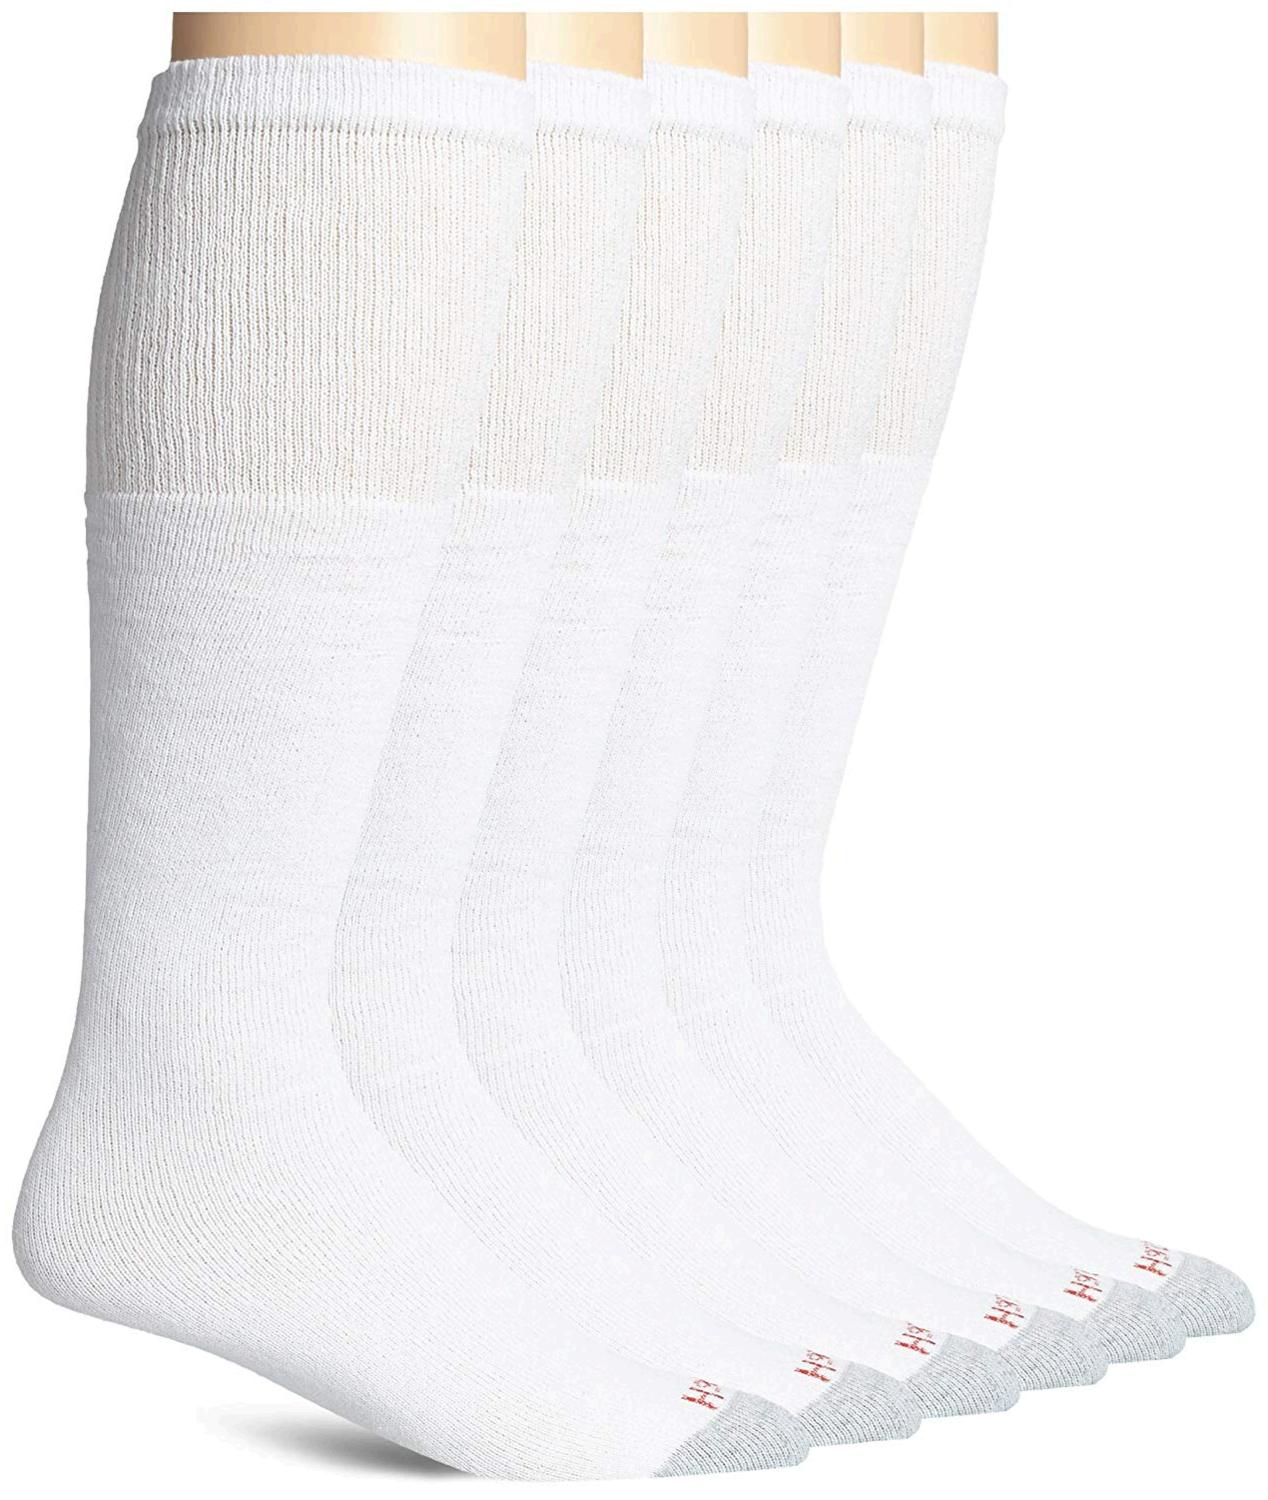 Hanes Men's 6 Pack Over-the-Calf Tube Socks, White, 10-13, White, Size ...